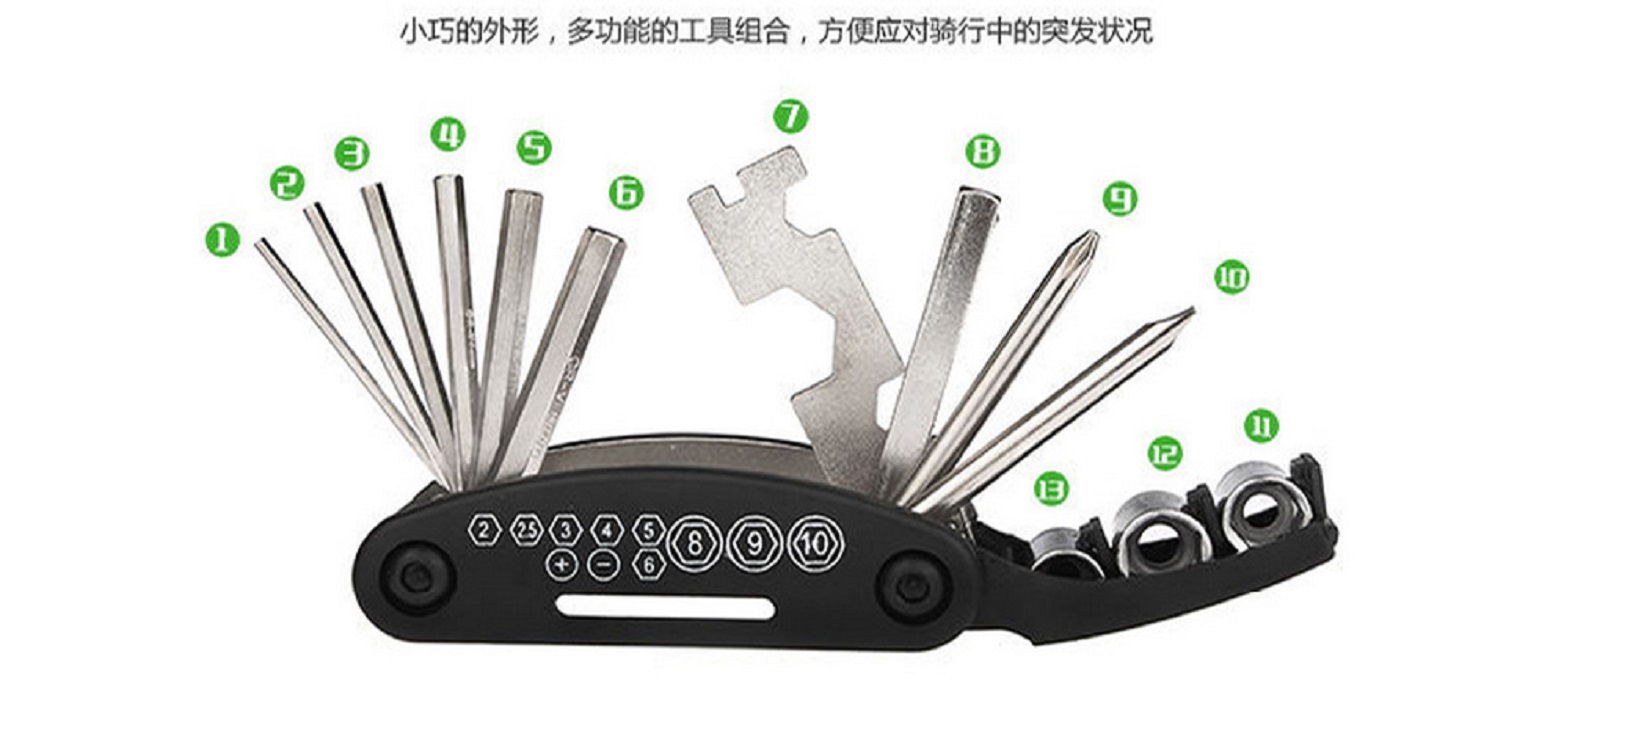 自行车装卸组合工具自行车装卸组合工具 内六角螺丝刀 套筒扳手多功能修理工具厂家